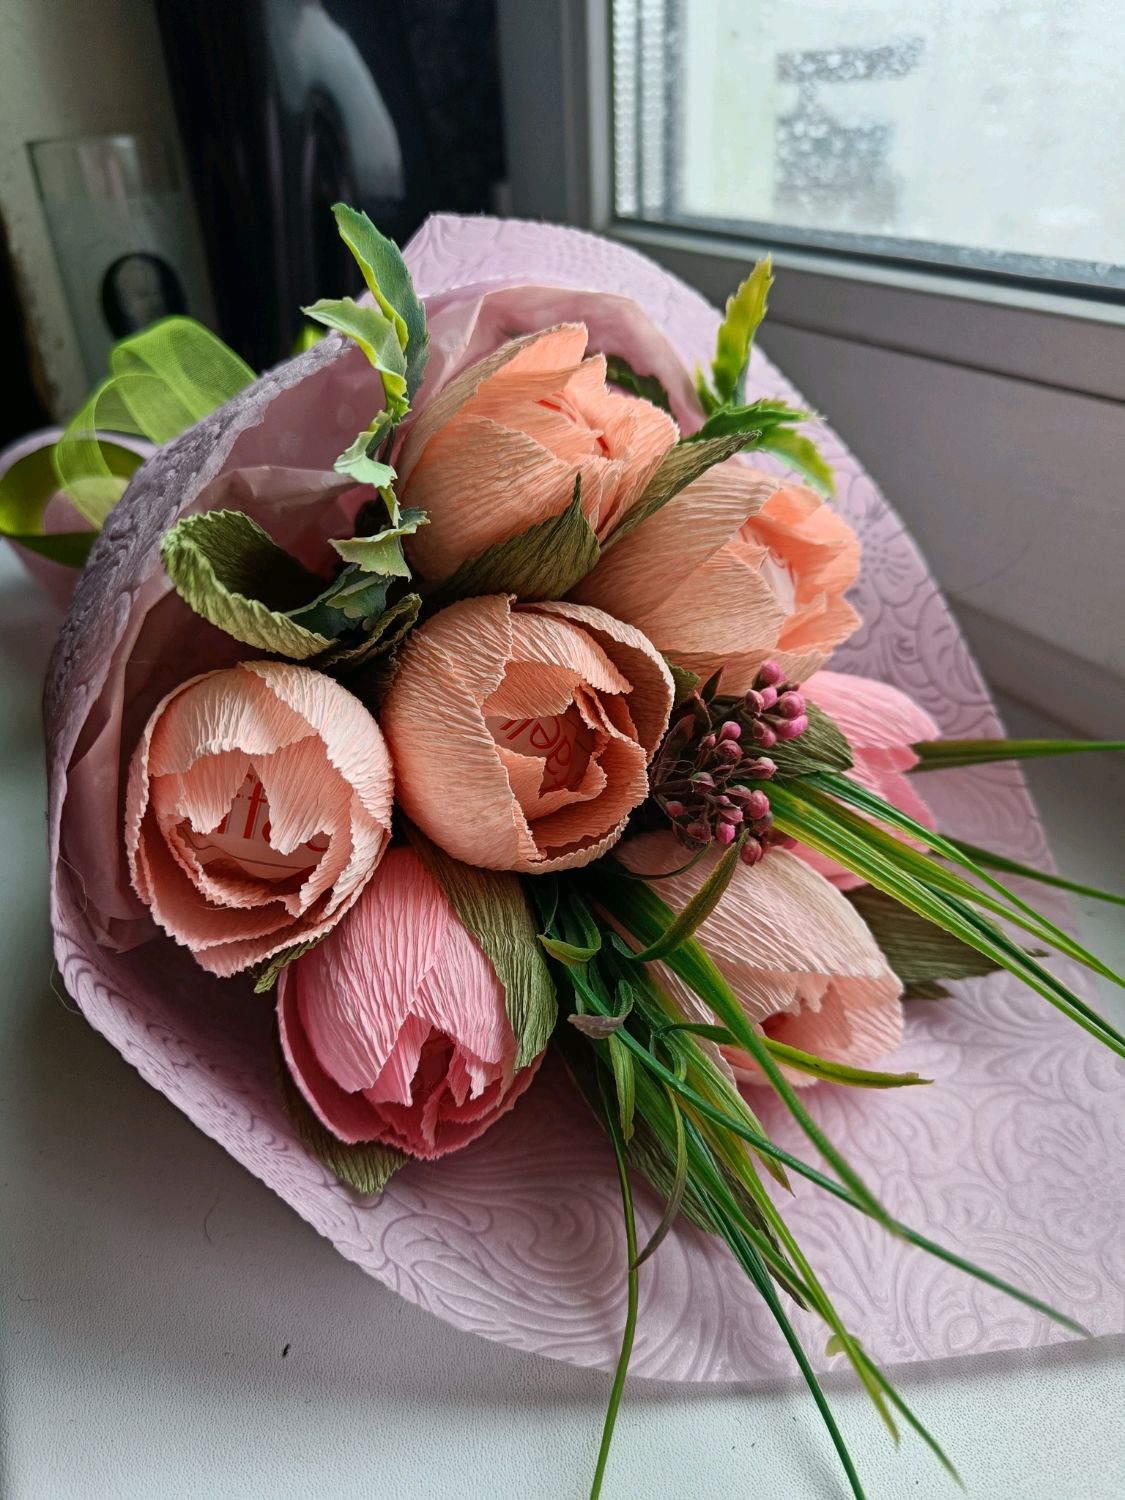 Купить тюльпаны - красивые букеты из тюльпанов от Dicentra